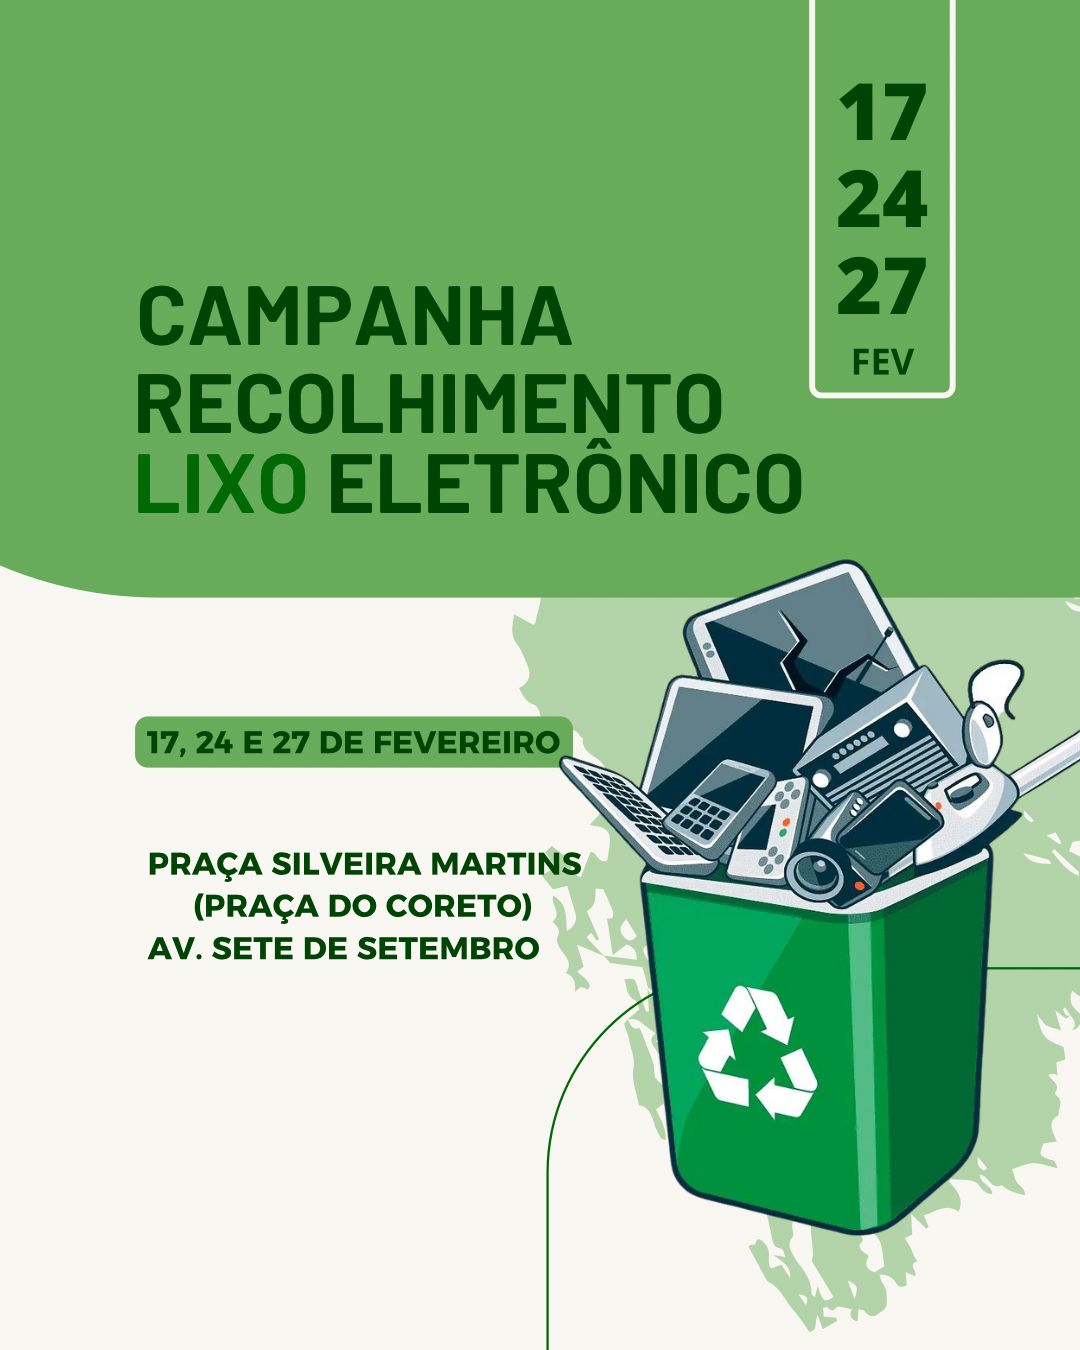 Campanha para recolhimento de lixo eletrônico ocorre neste mês